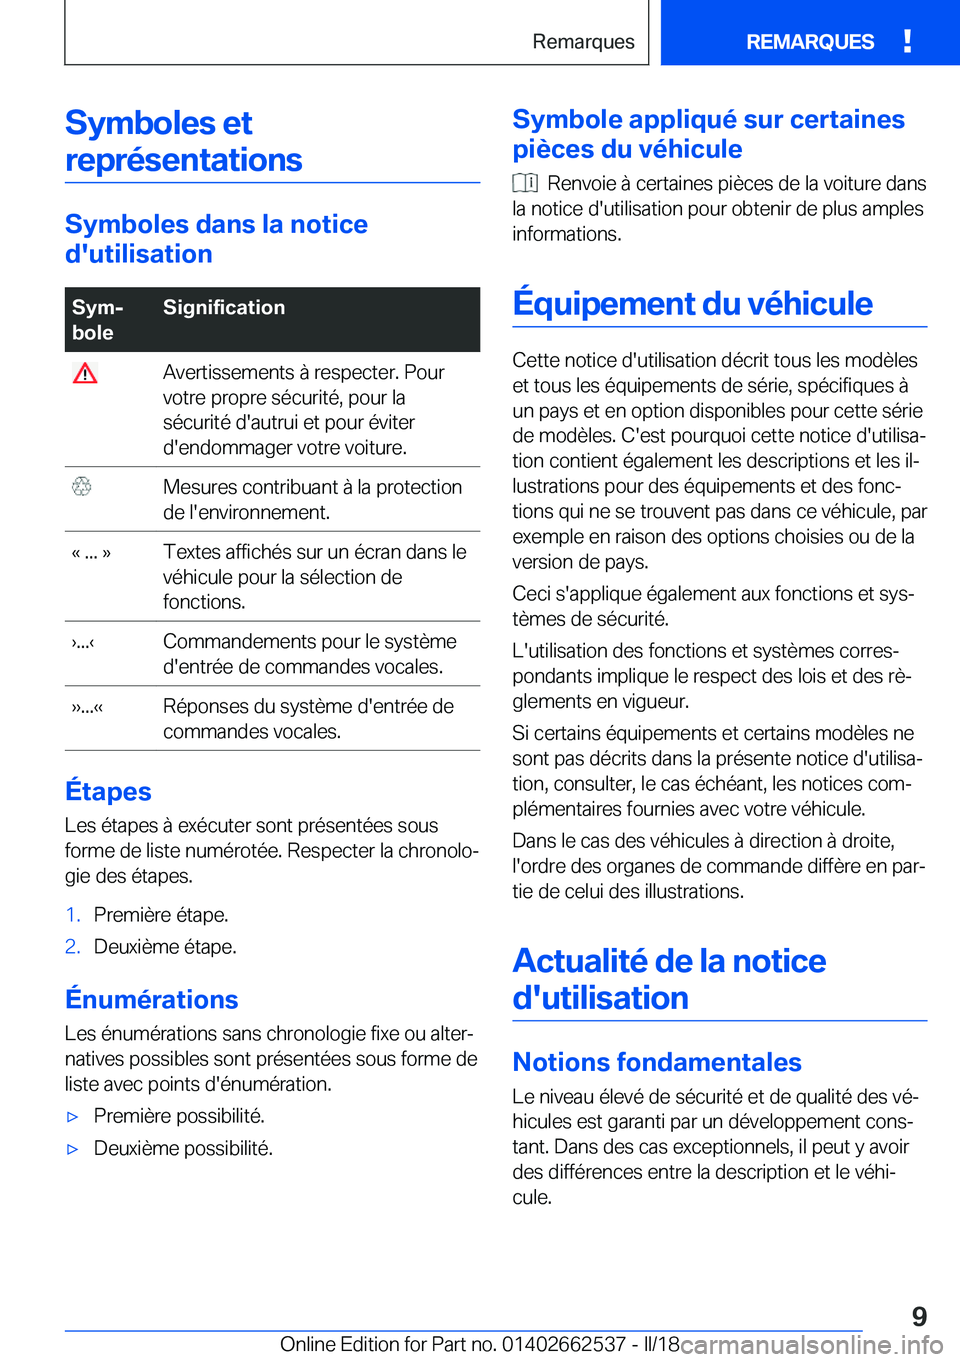 BMW X5 M 2018  Notices Demploi (in French) �S�y�m�b�o�l�e�s��e�t�r�e�p�r�é�s�e�n�t�a�t�i�o�n�s
�S�y�m�b�o�l�e�s��d�a�n�s��l�a��n�o�t�i�c�e
�d�'�u�t�i�l�i�s�a�t�i�o�n
�S�y�mj
�b�o�l�e�S�i�g�n�i�f�i�c�a�t�i�o�n� �A�v�e�r�t�i�s�s�e�m�e�